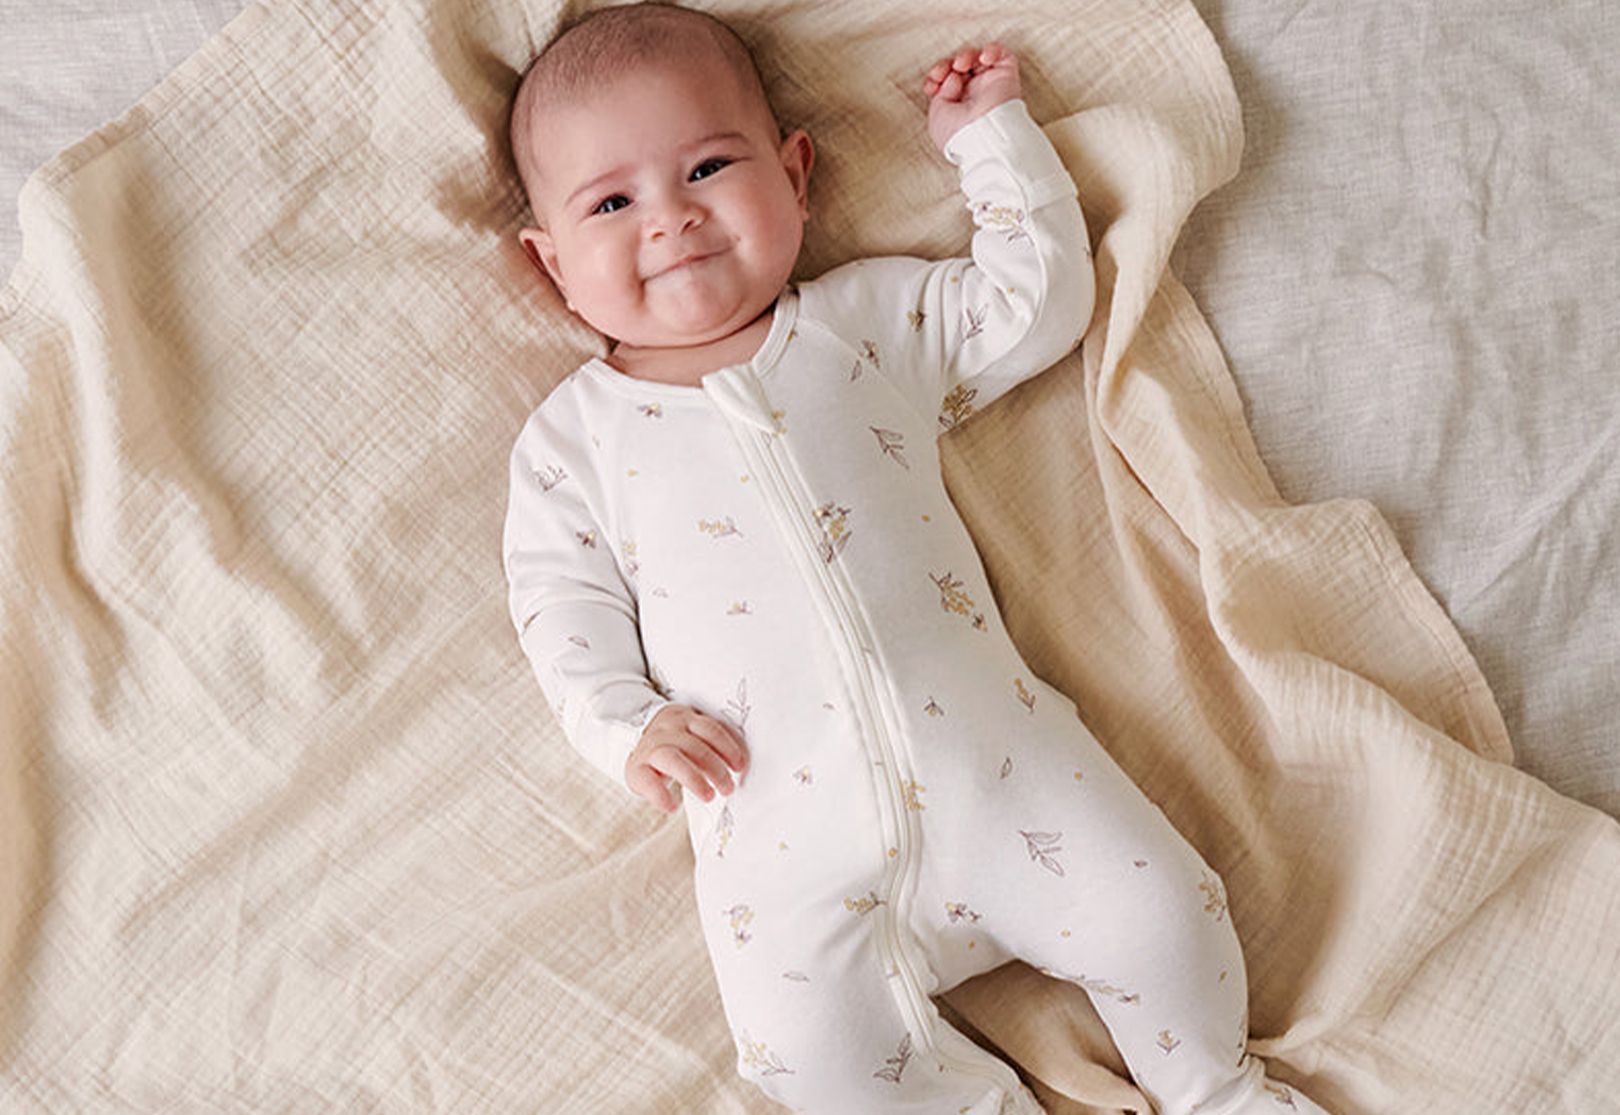 Newborn Baby Nursery Checklist for Parents - Purebaby - Purebaby